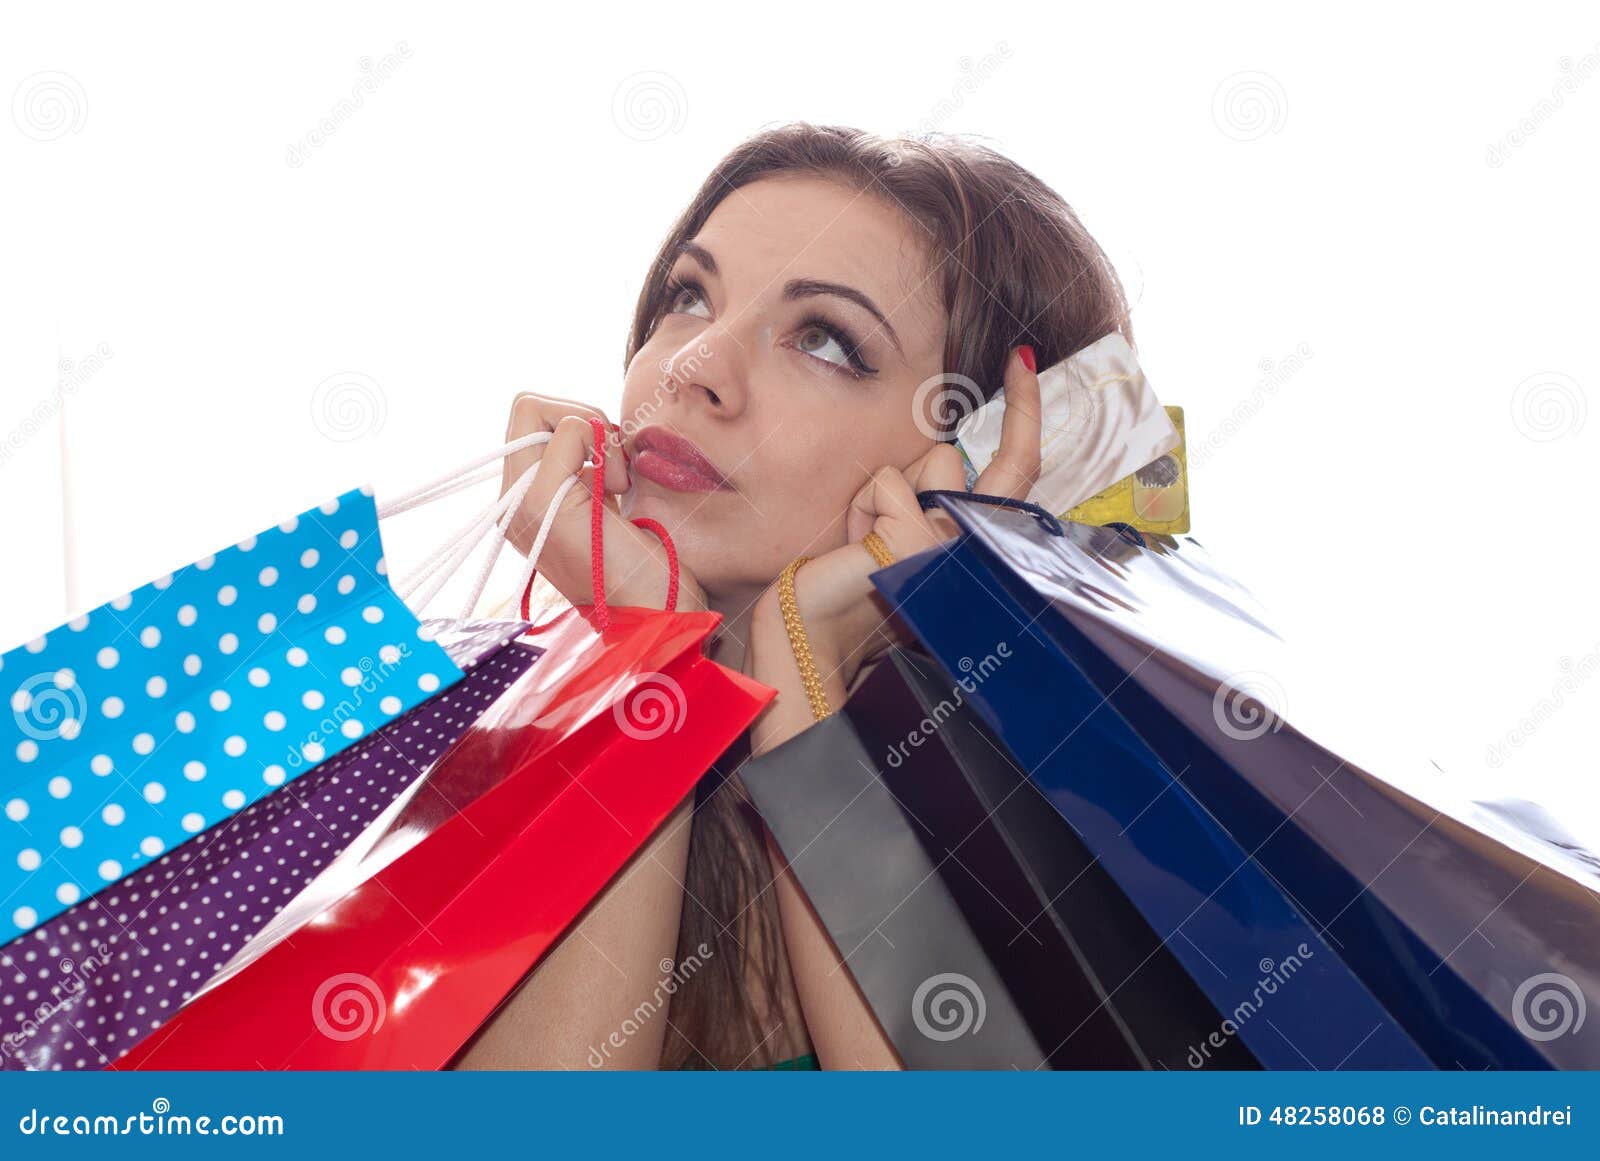 shopaholic shopping woman